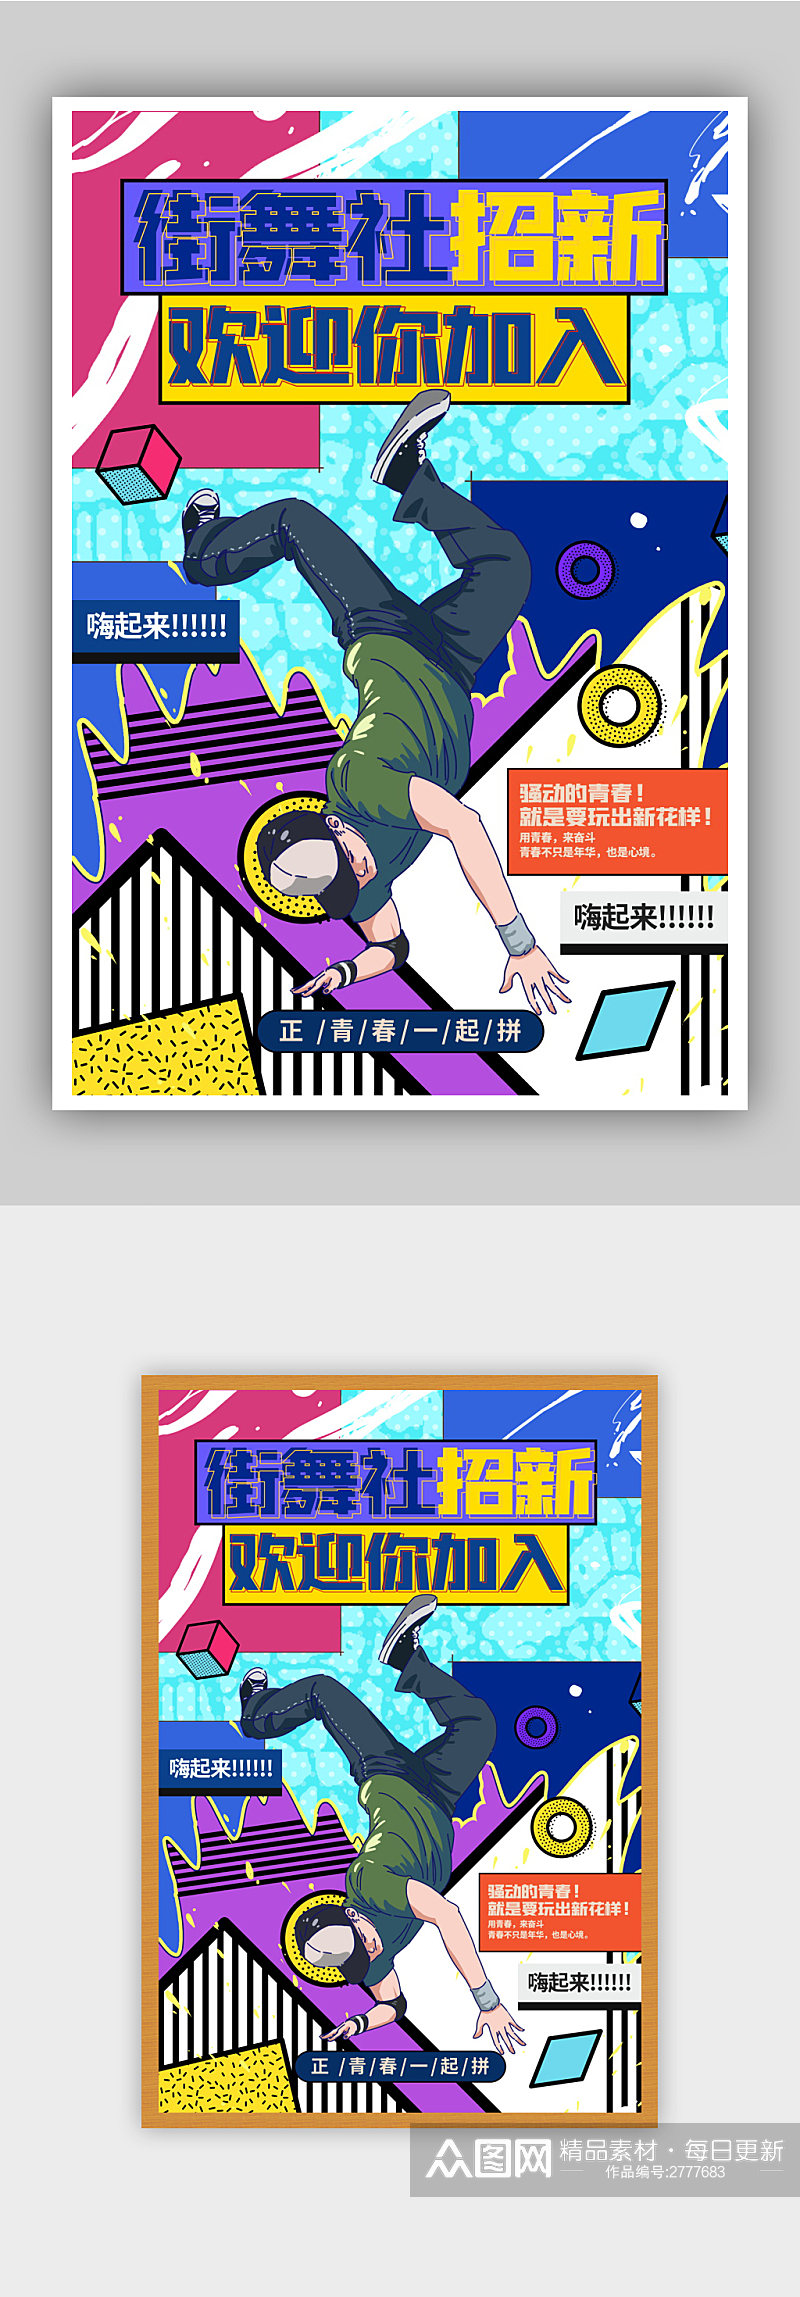 学校炫酷街舞社招新纳新宣传海报素材